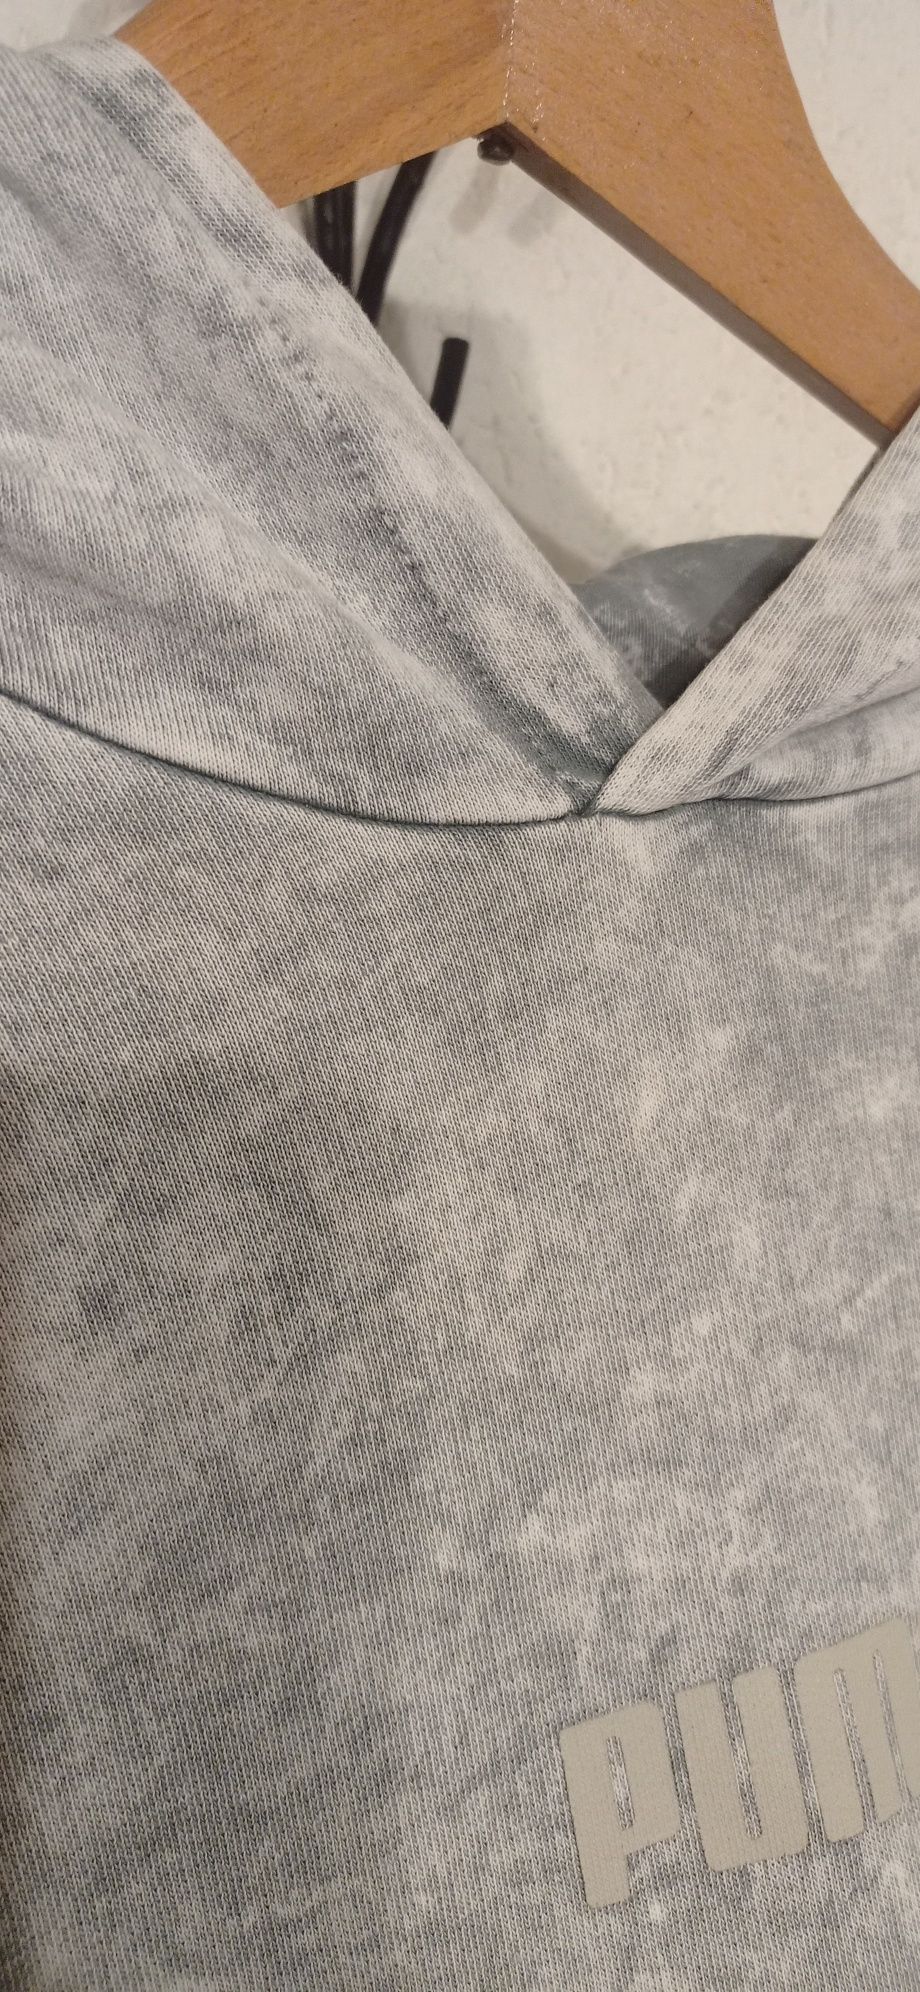 Puma-marmurkowa bluza z kapturem XL